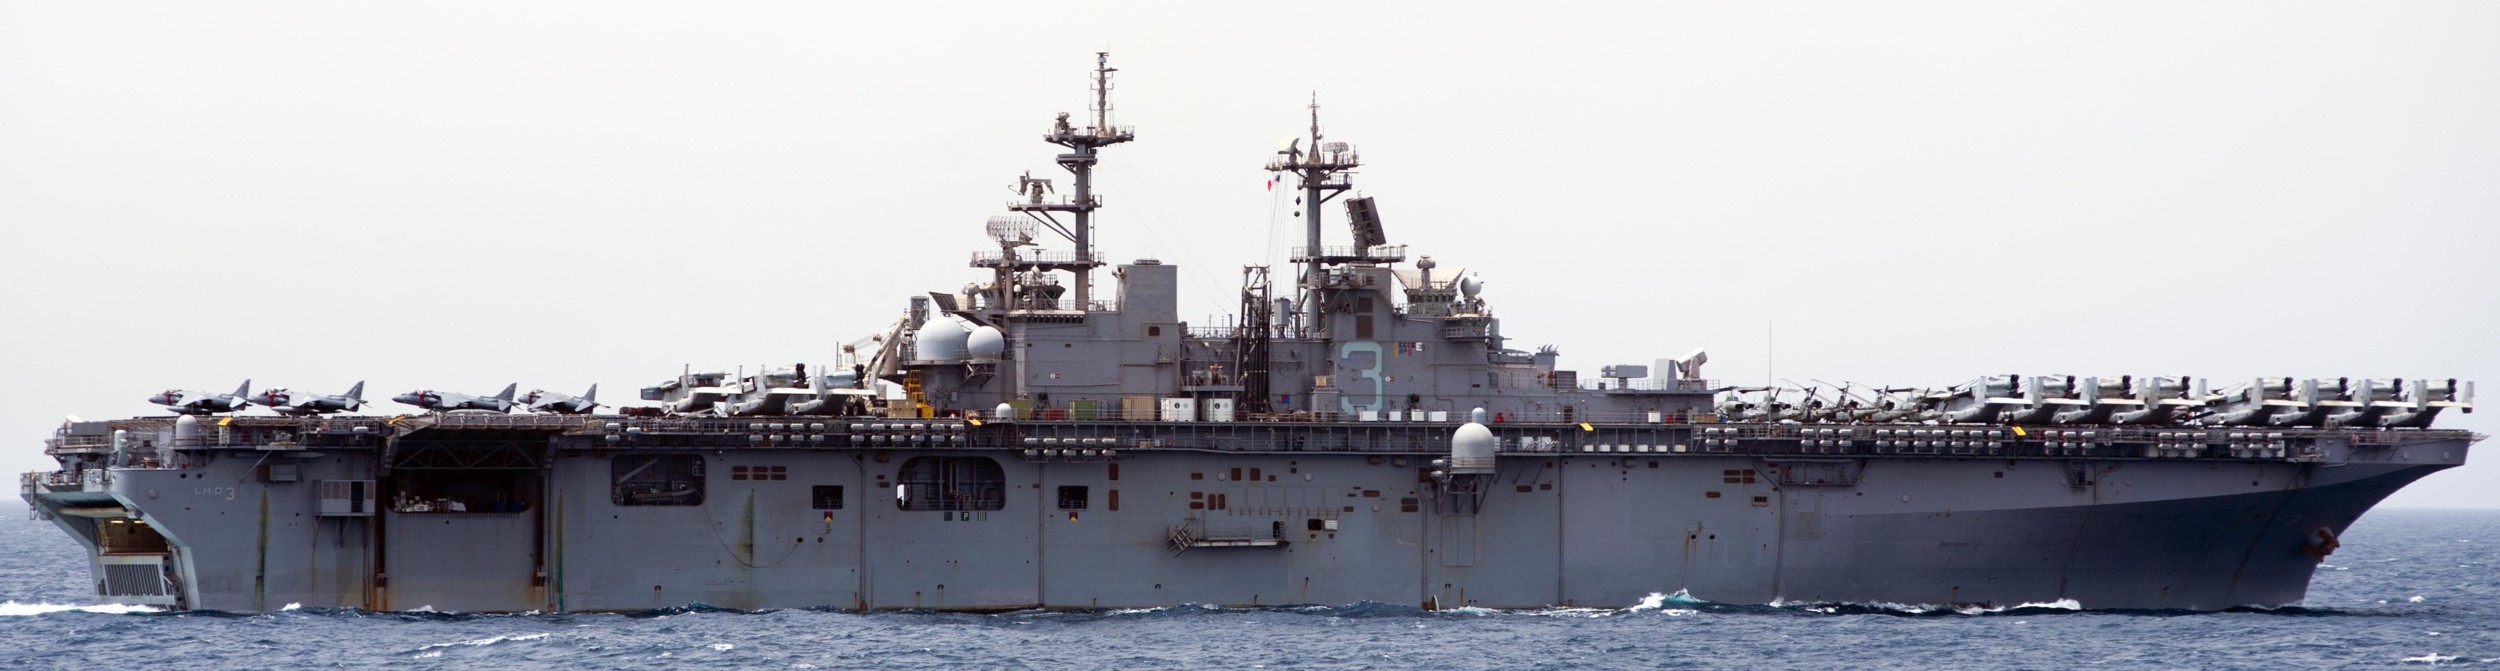 lhd-3 uss kearsarge wasp class amphibious assault ship us navy marines vmm-266 5th fleet aor 127